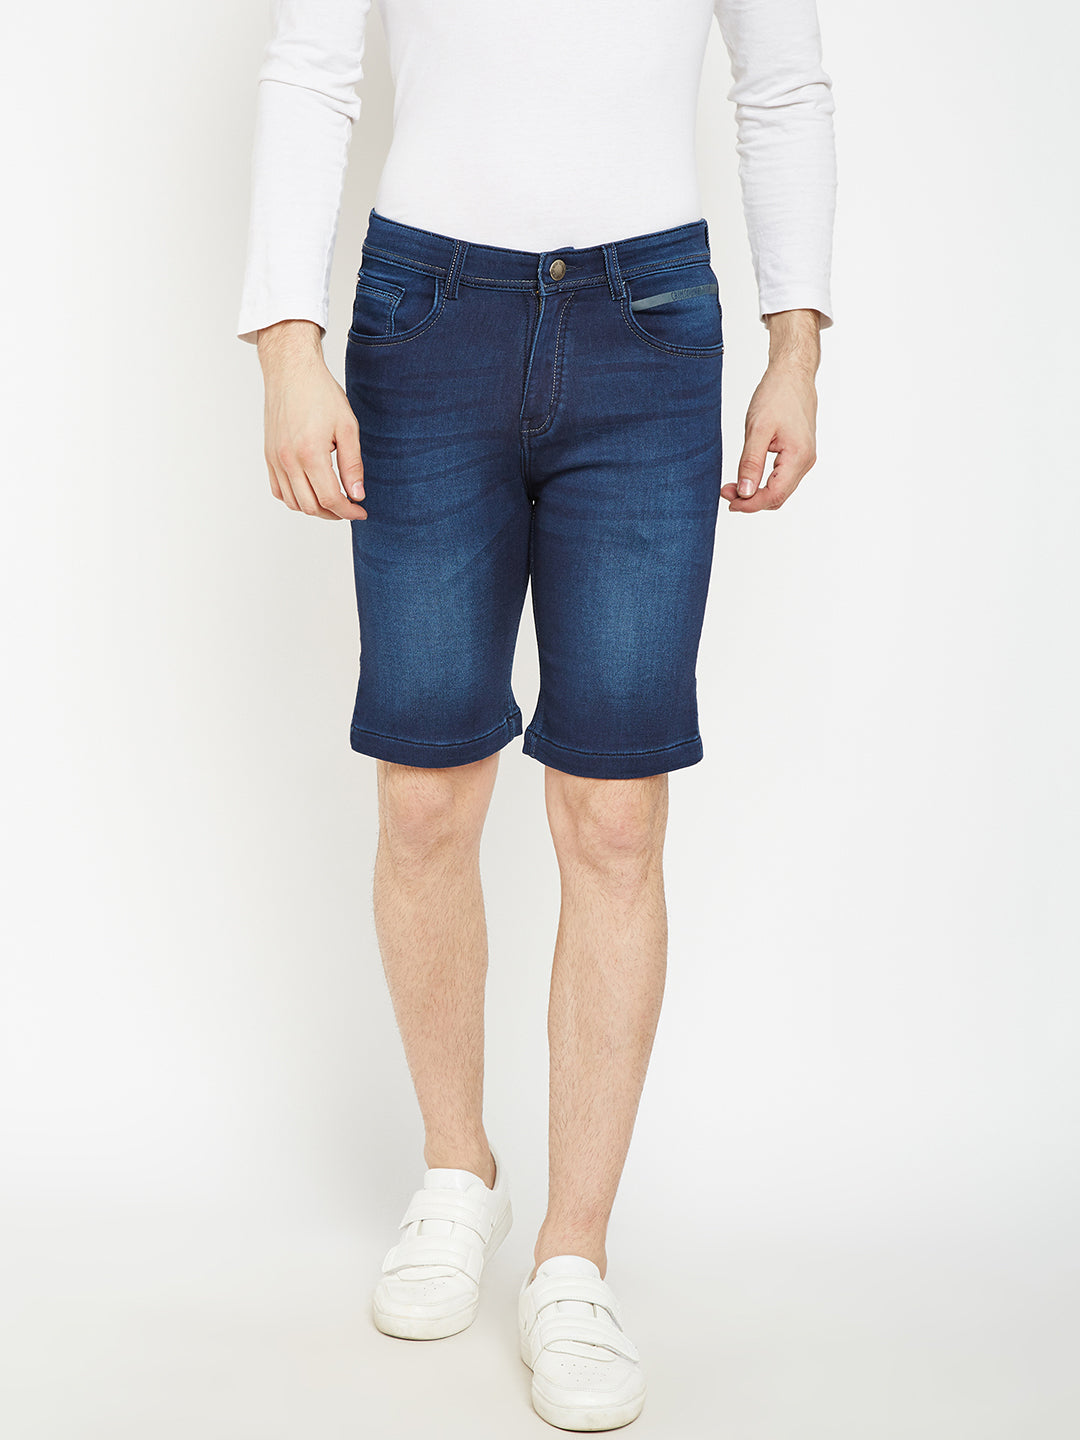 Blue Denim Shorts - Men Shorts